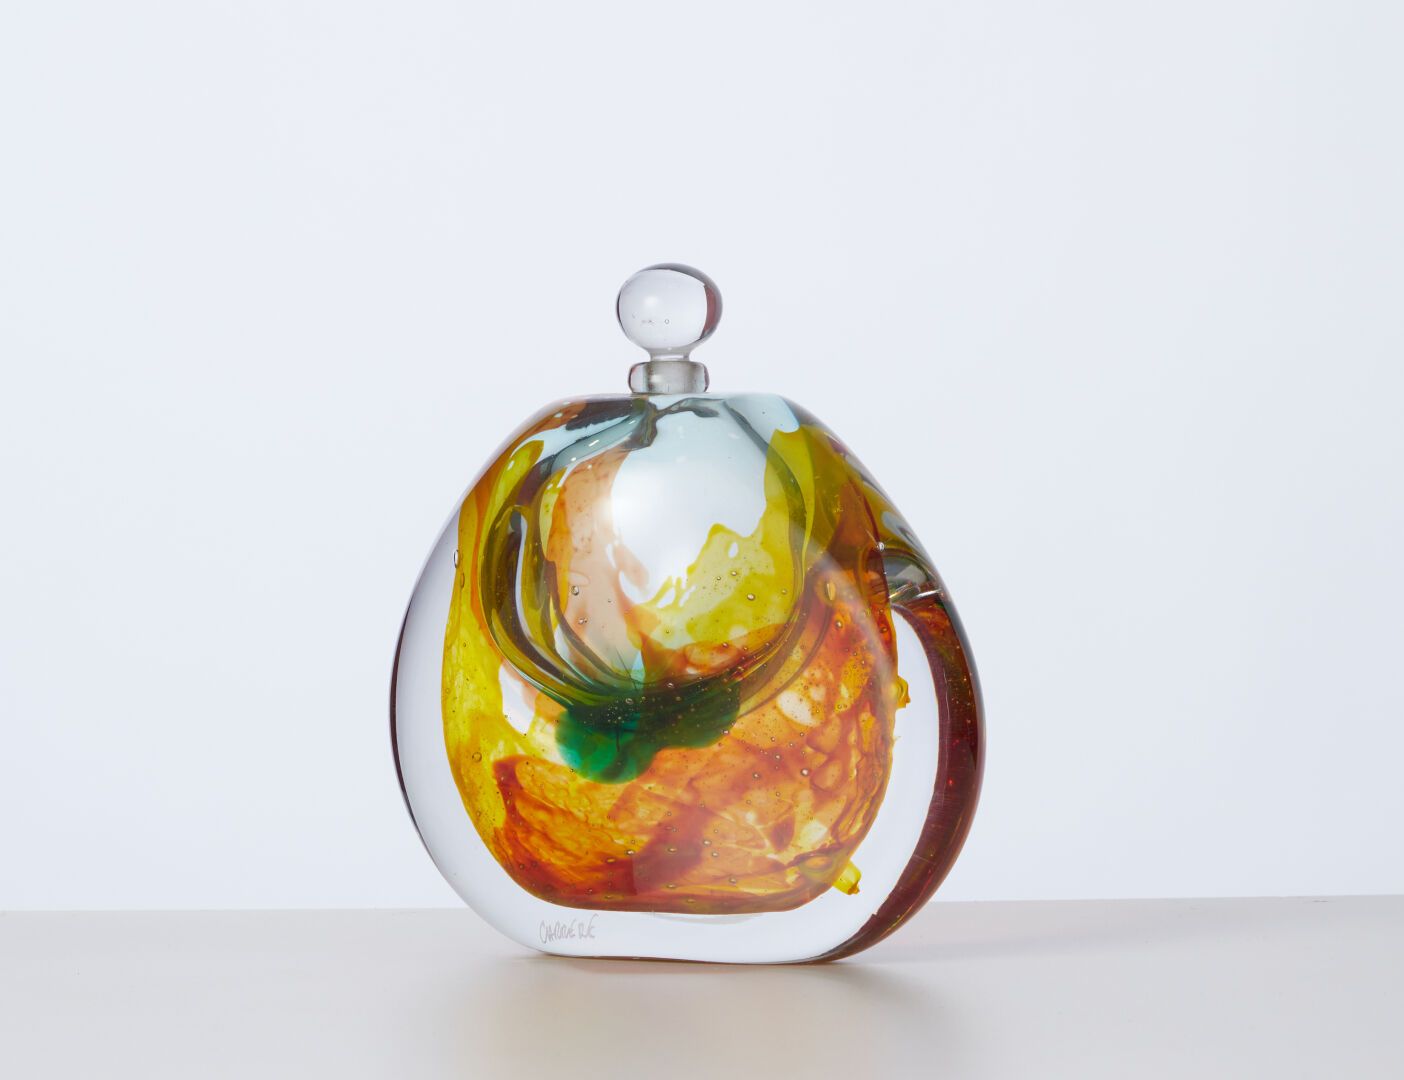 Null CARRERE Xavier (b. 1966)
Glass ovoid bottle
H: 16 cm